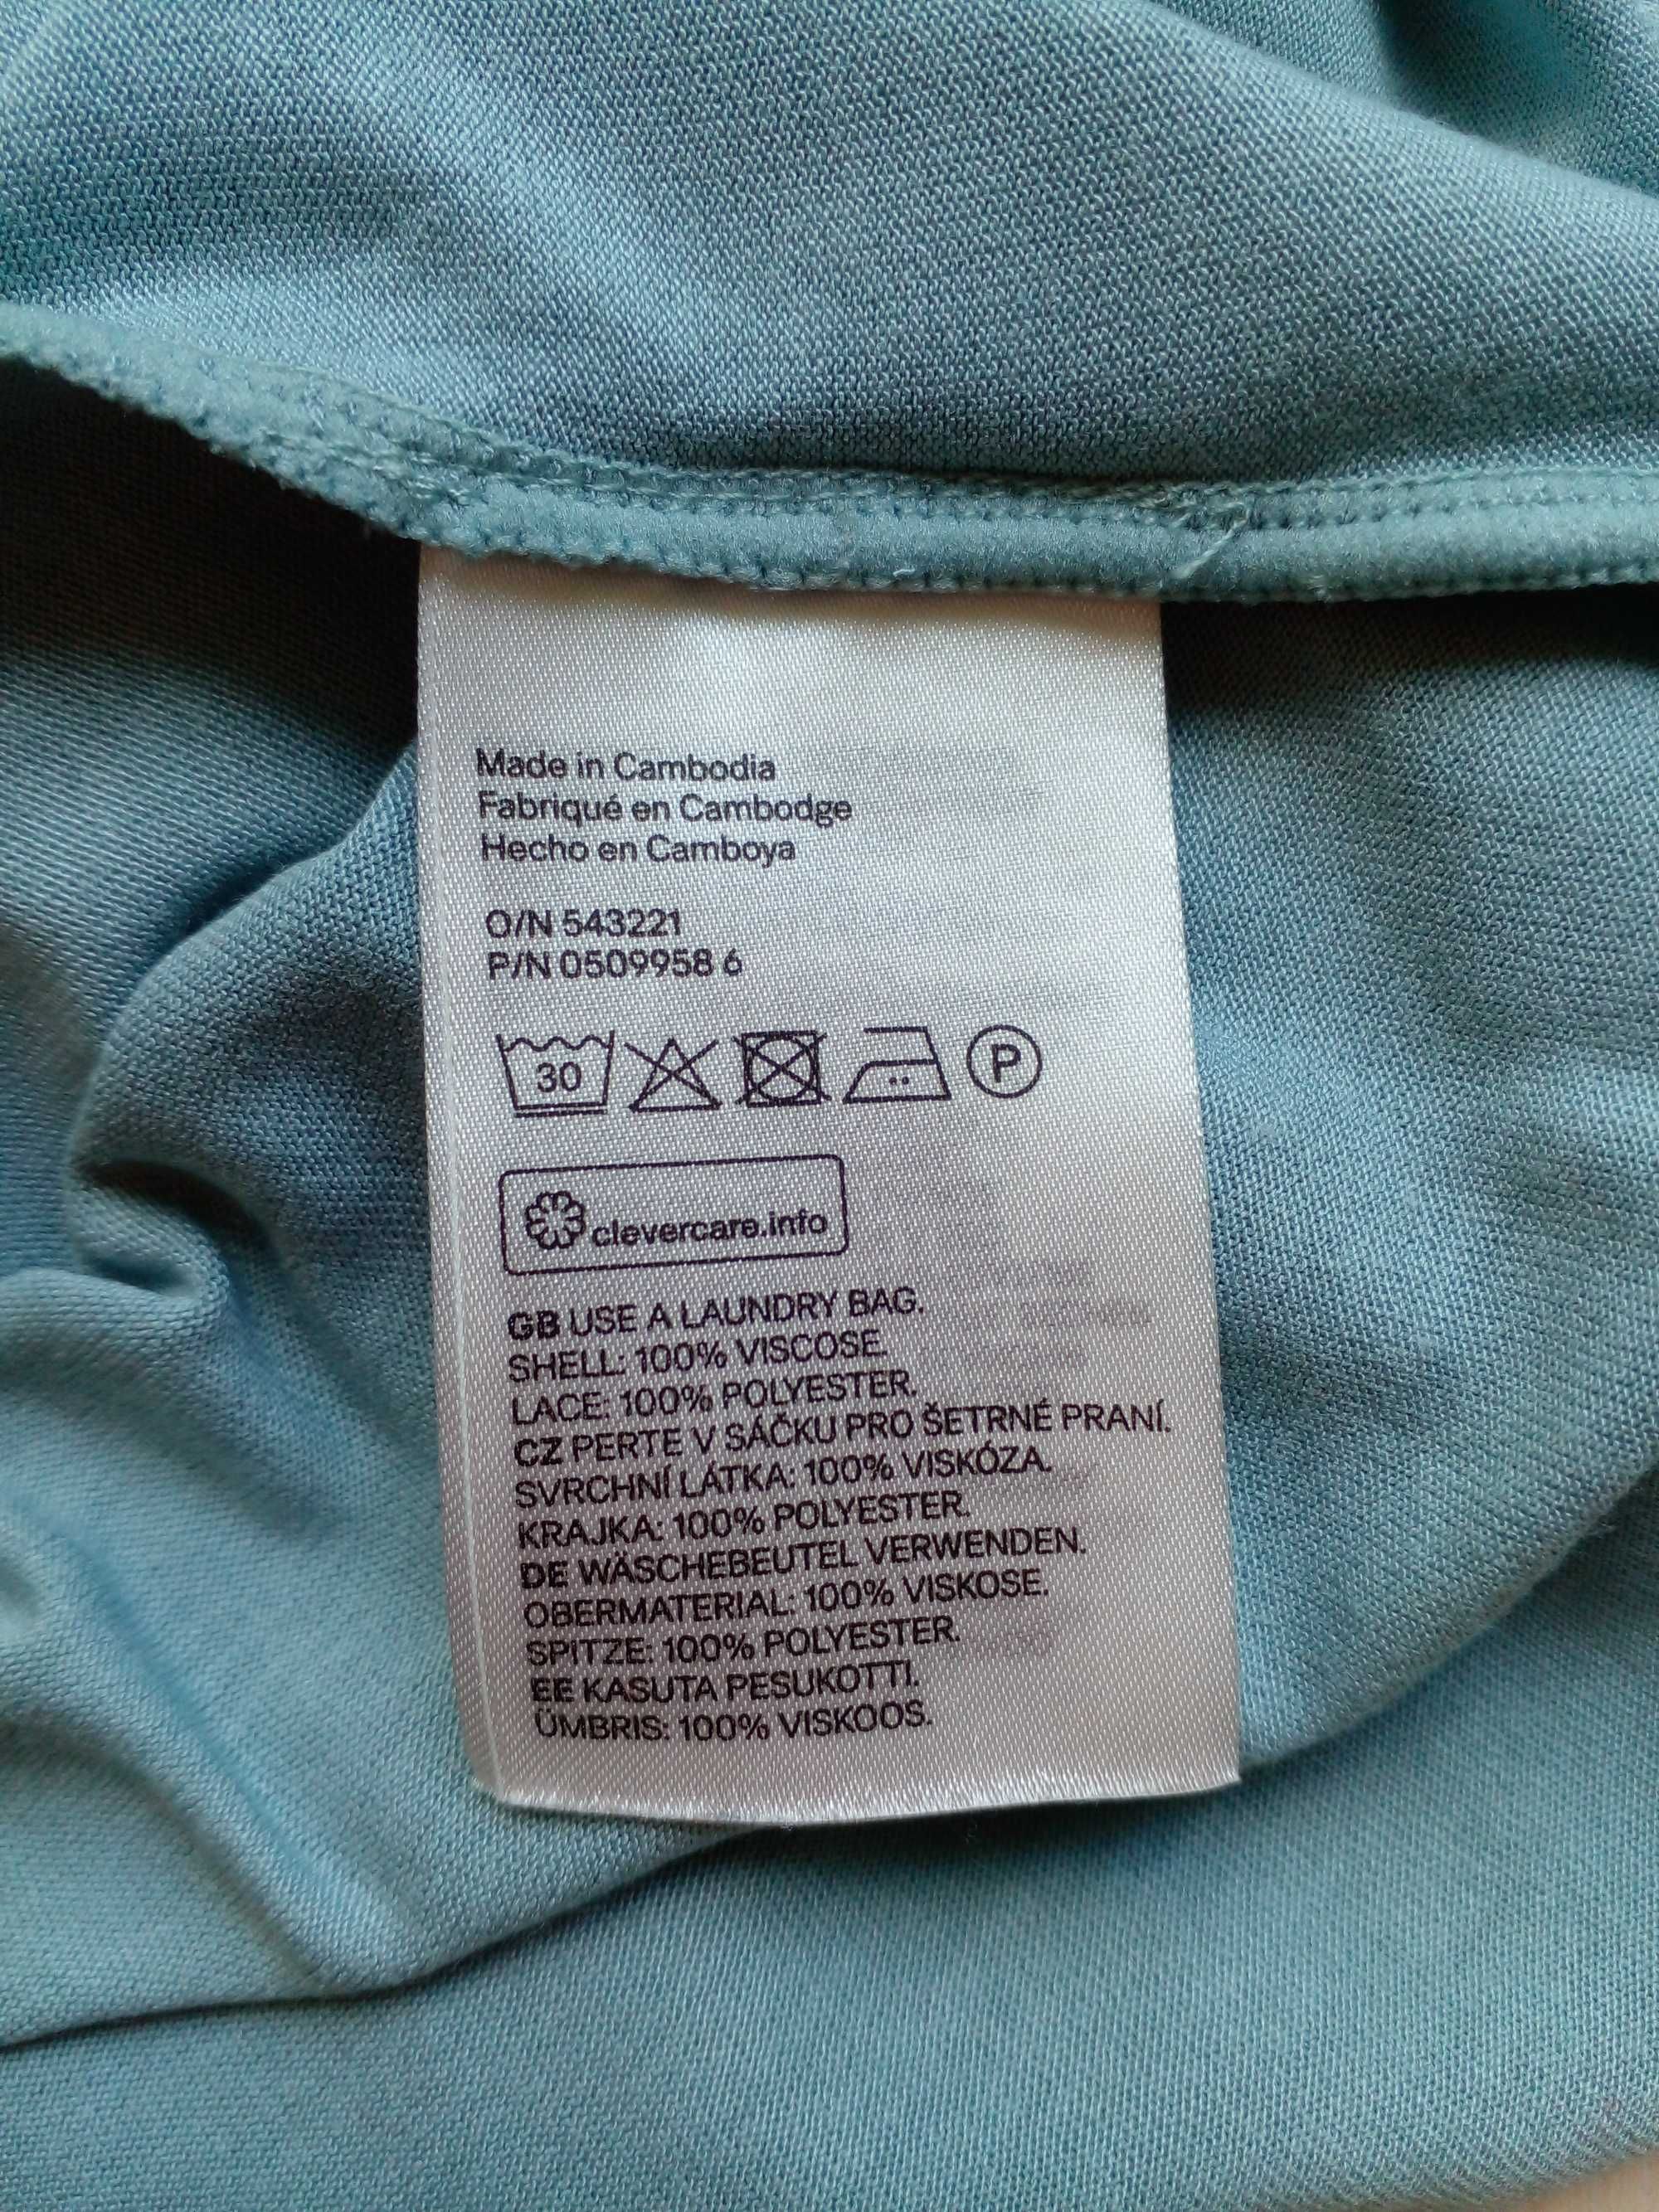 Летняя нежная майка топ футболка H&M красивая размер XS или 40 наш